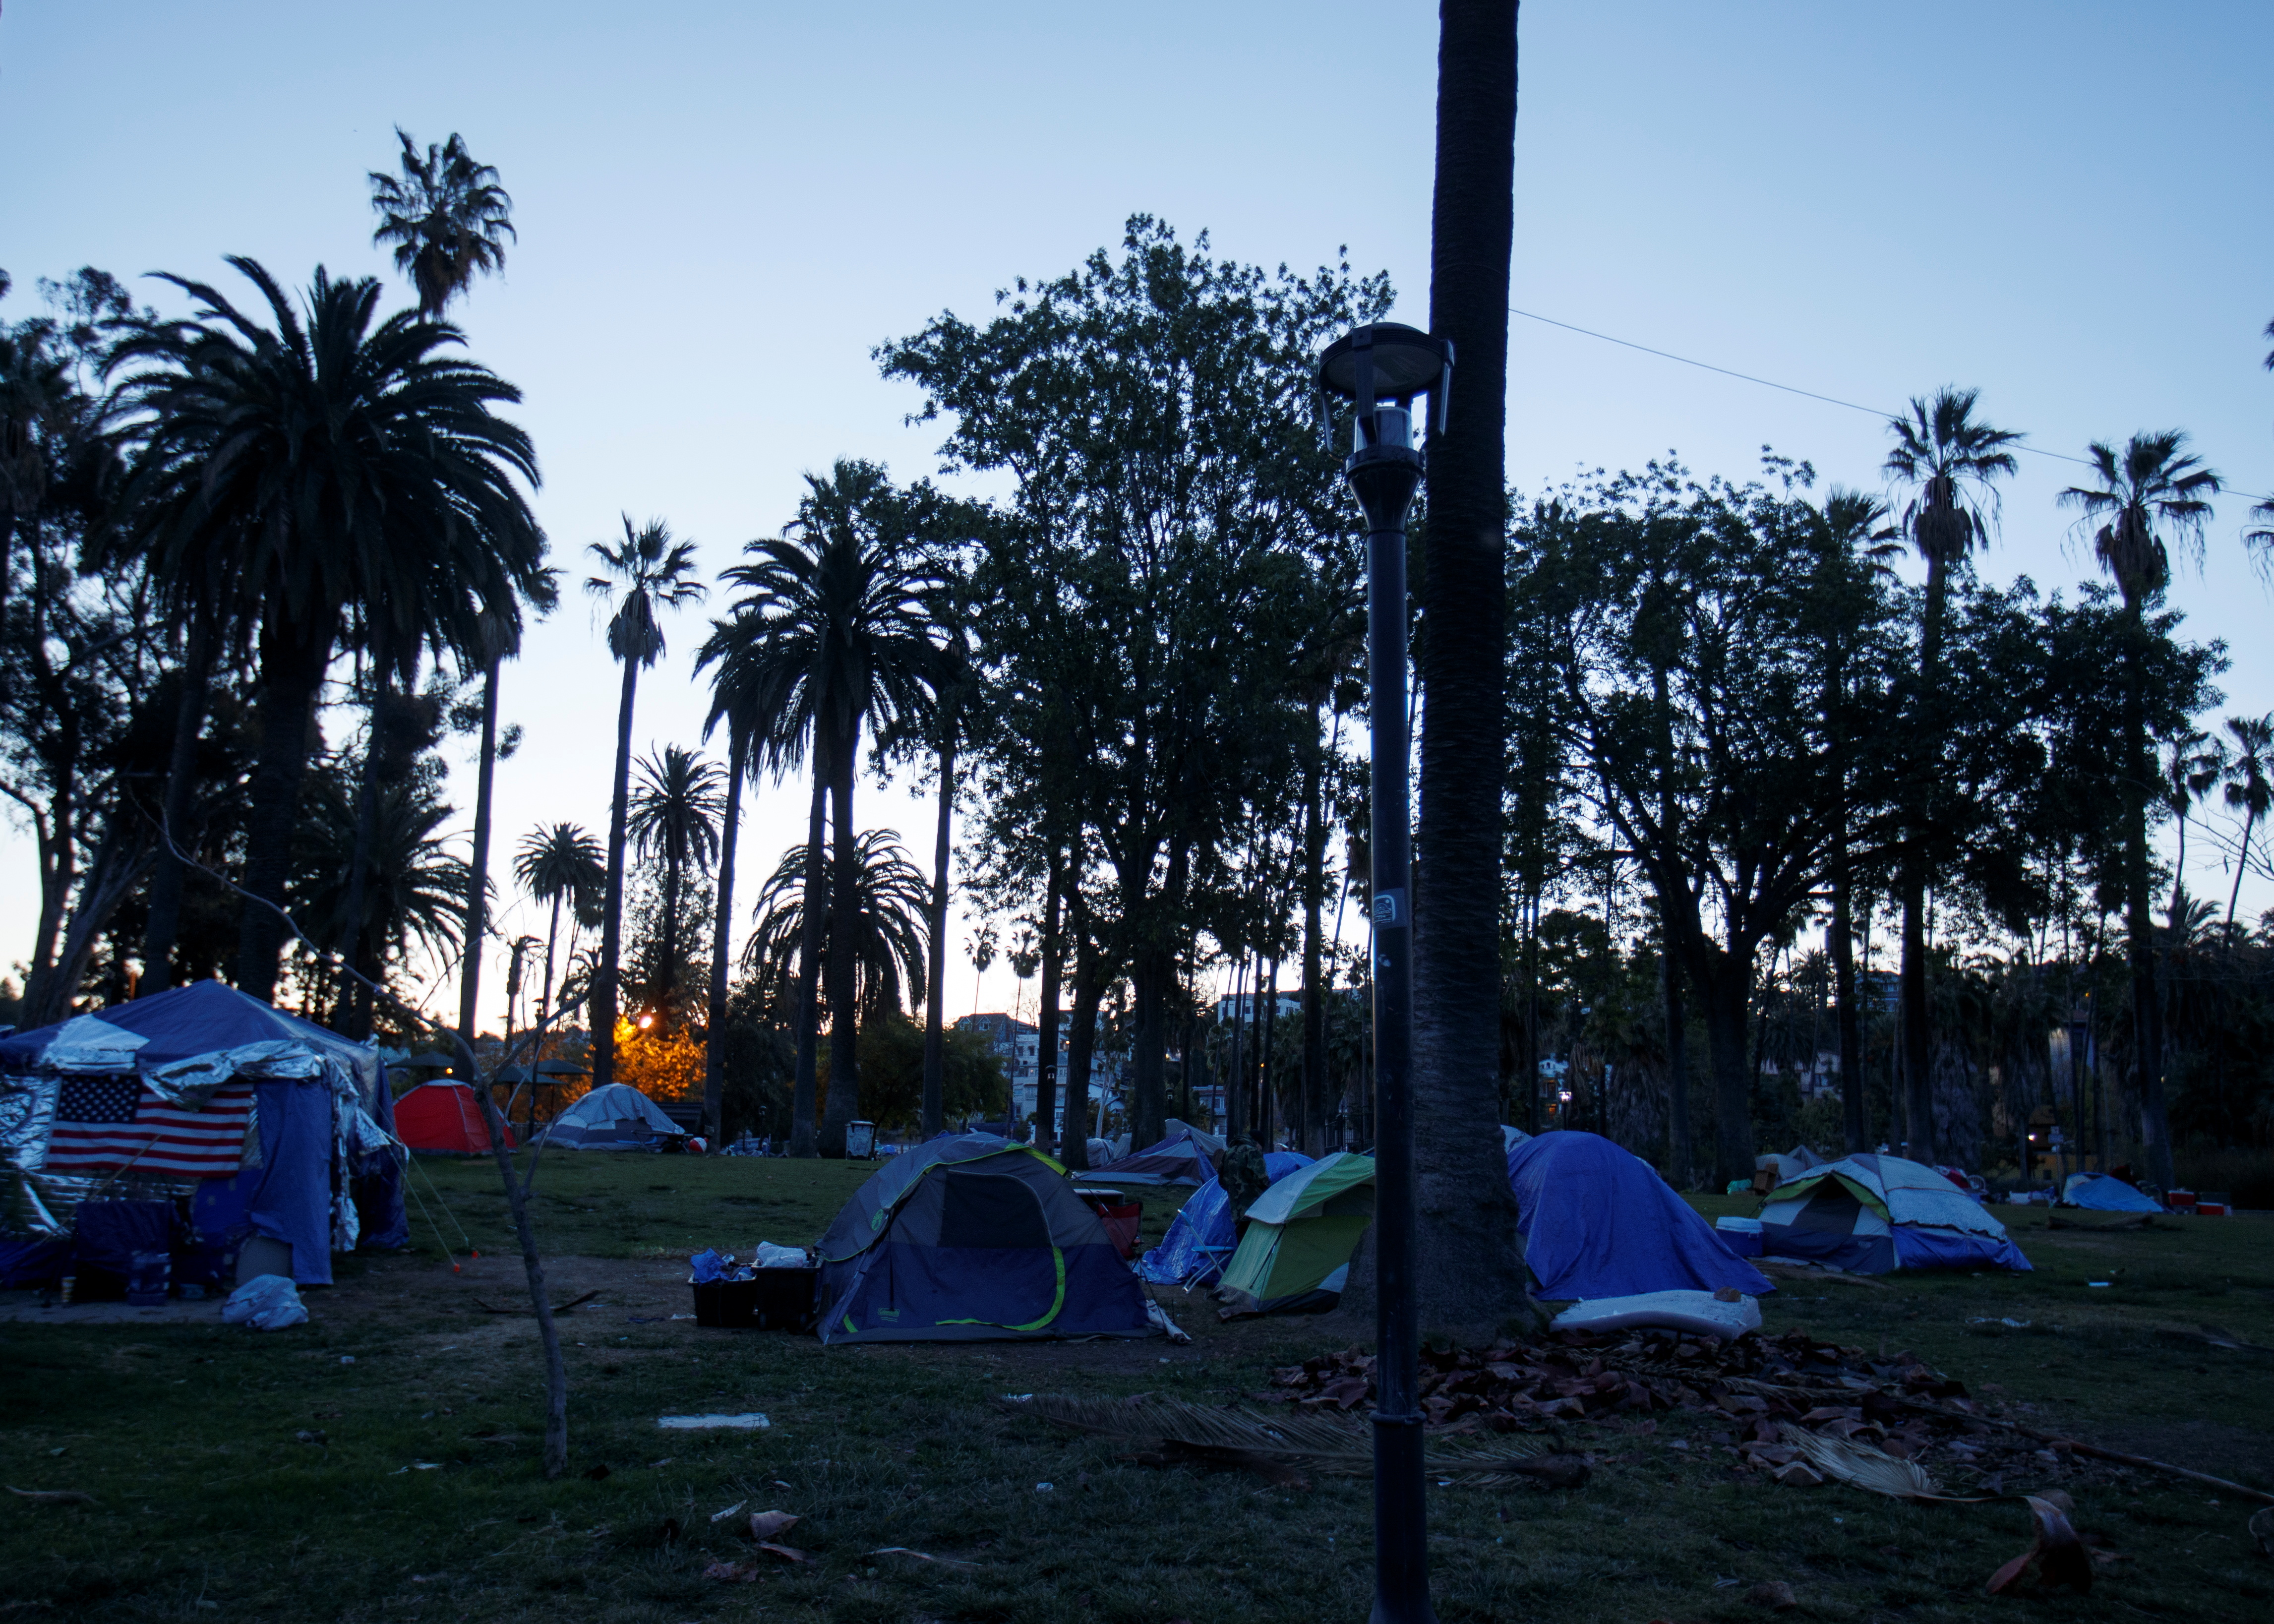 Los campamentos de personas sin techo son cada vez más comunes en Los Ángeles. REUTERS/Mike Blake